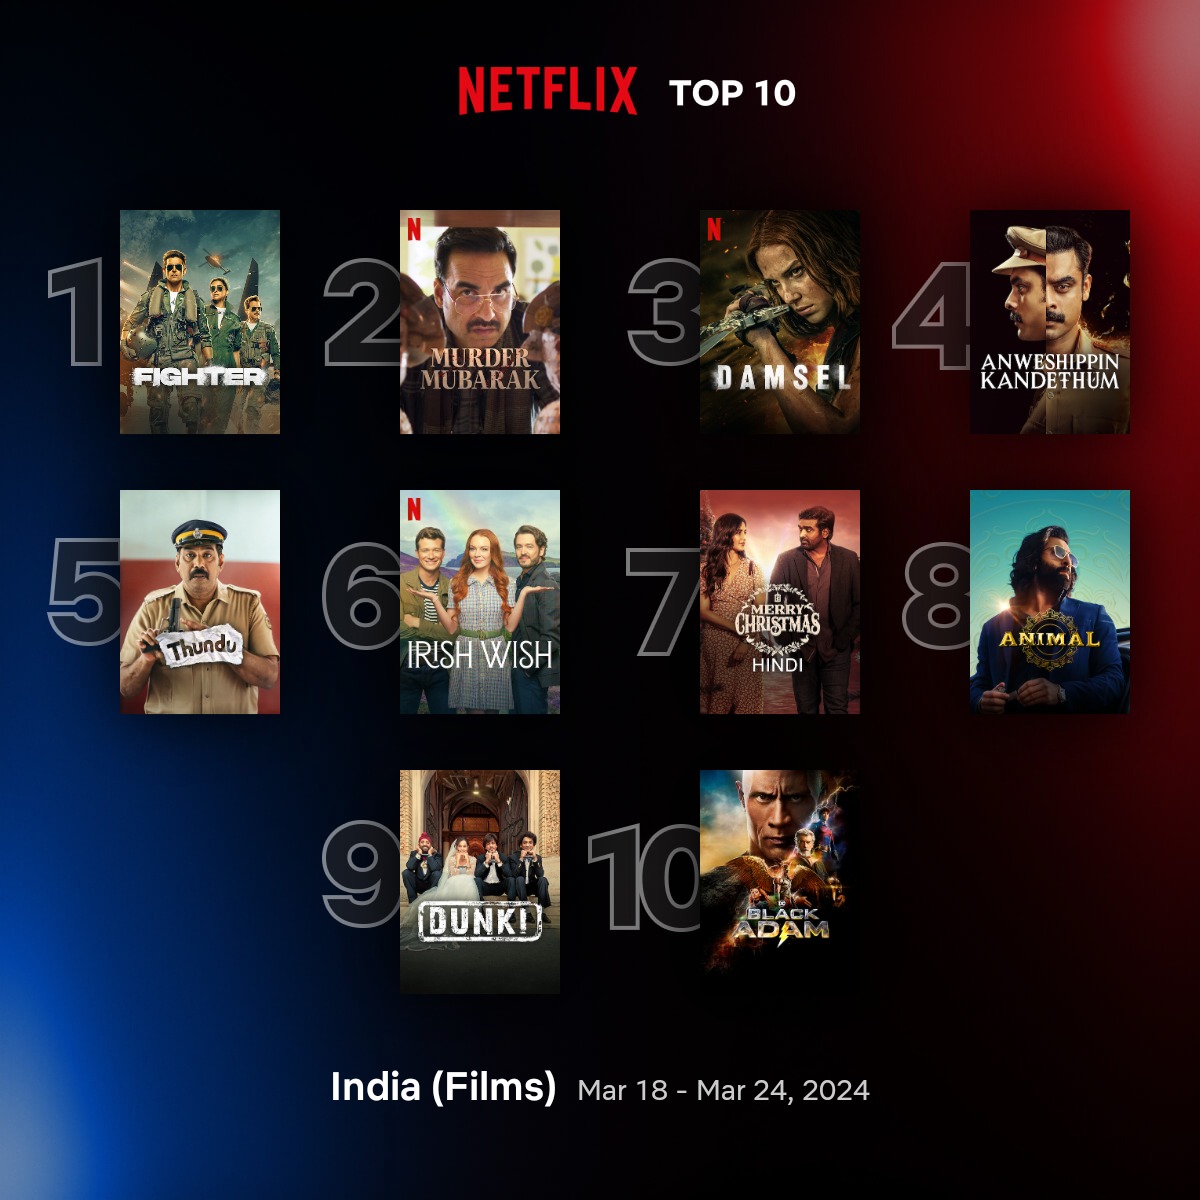 Top 10 films on #Netflix India [18-24 March]

1.#Fighter
2.#MurderMubarak
7. #MerryChristmas (Hindi) 
8.#Animal
9.#Dunki